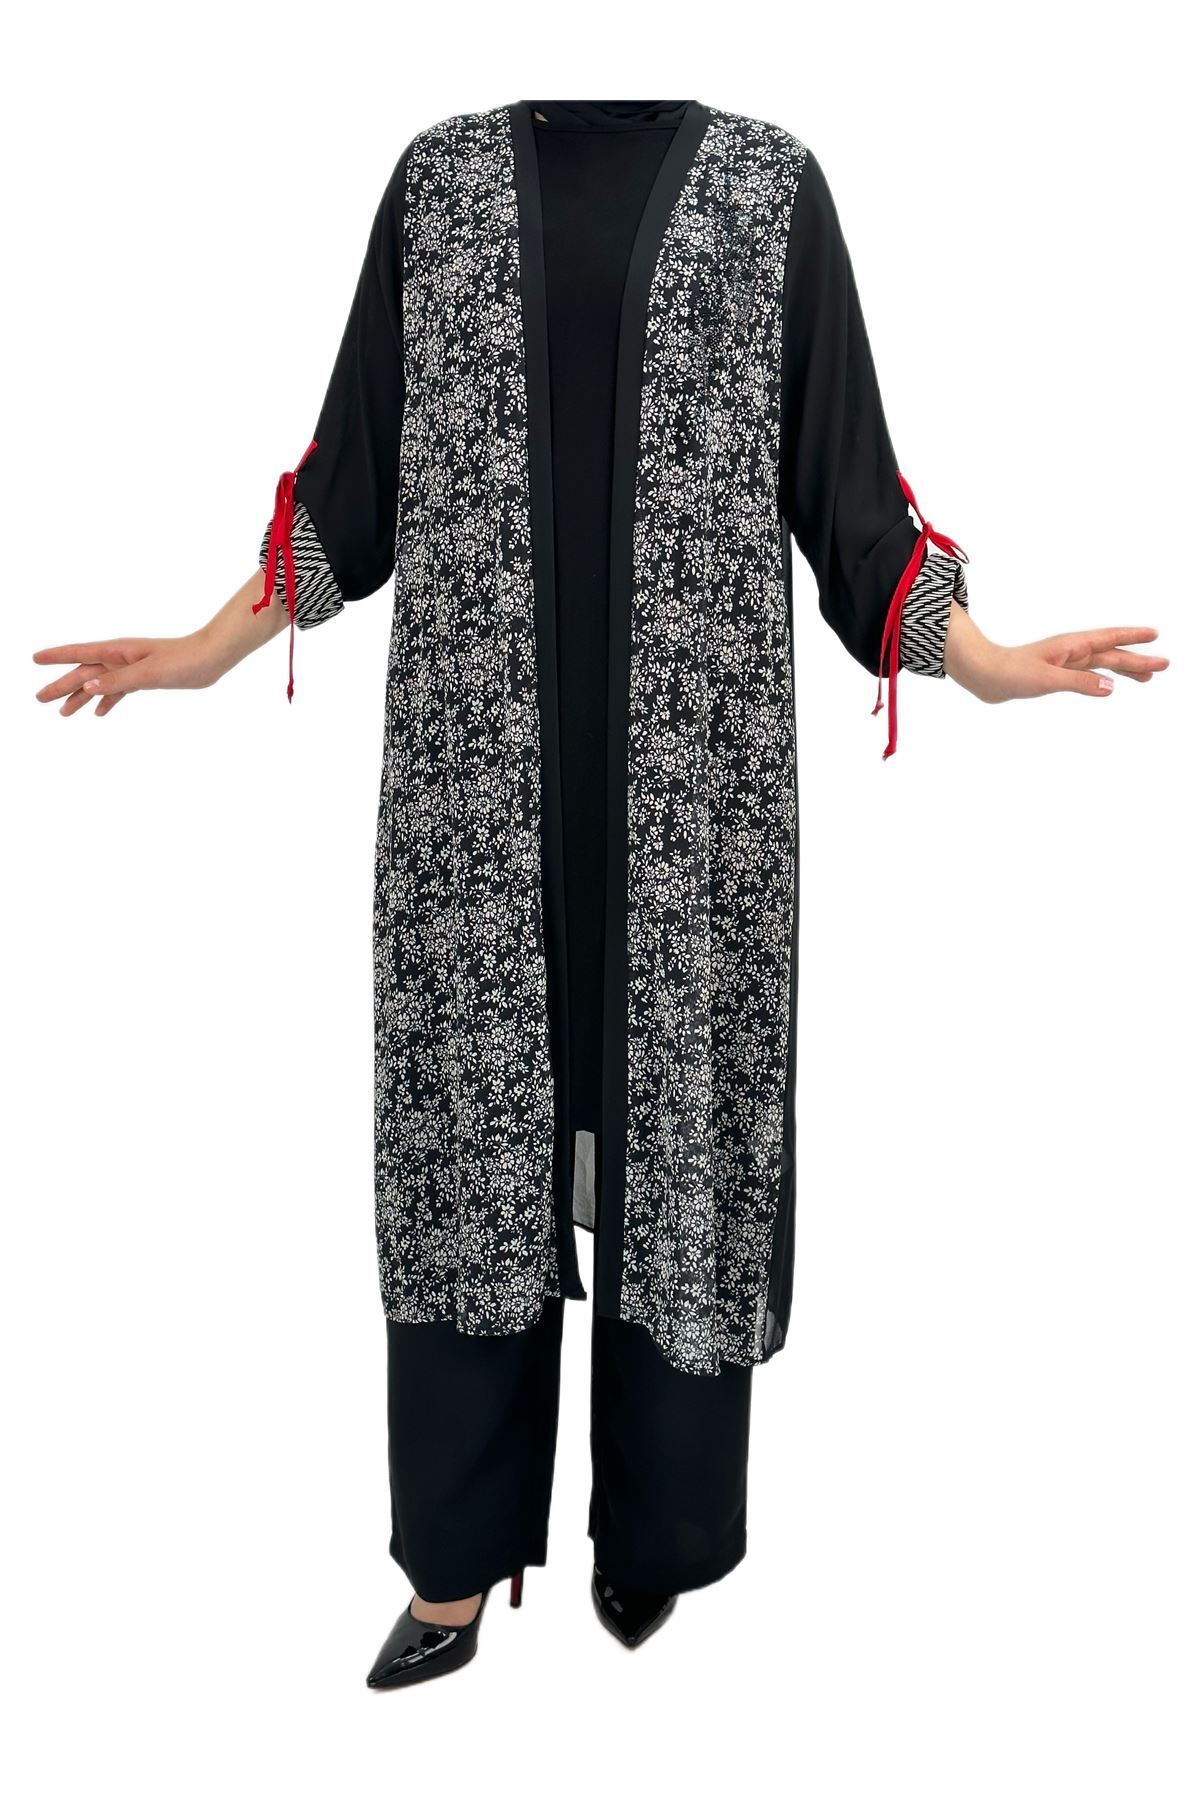 ottoman wear Otw48412 Şifon Ceket-içlik Takım Siyah